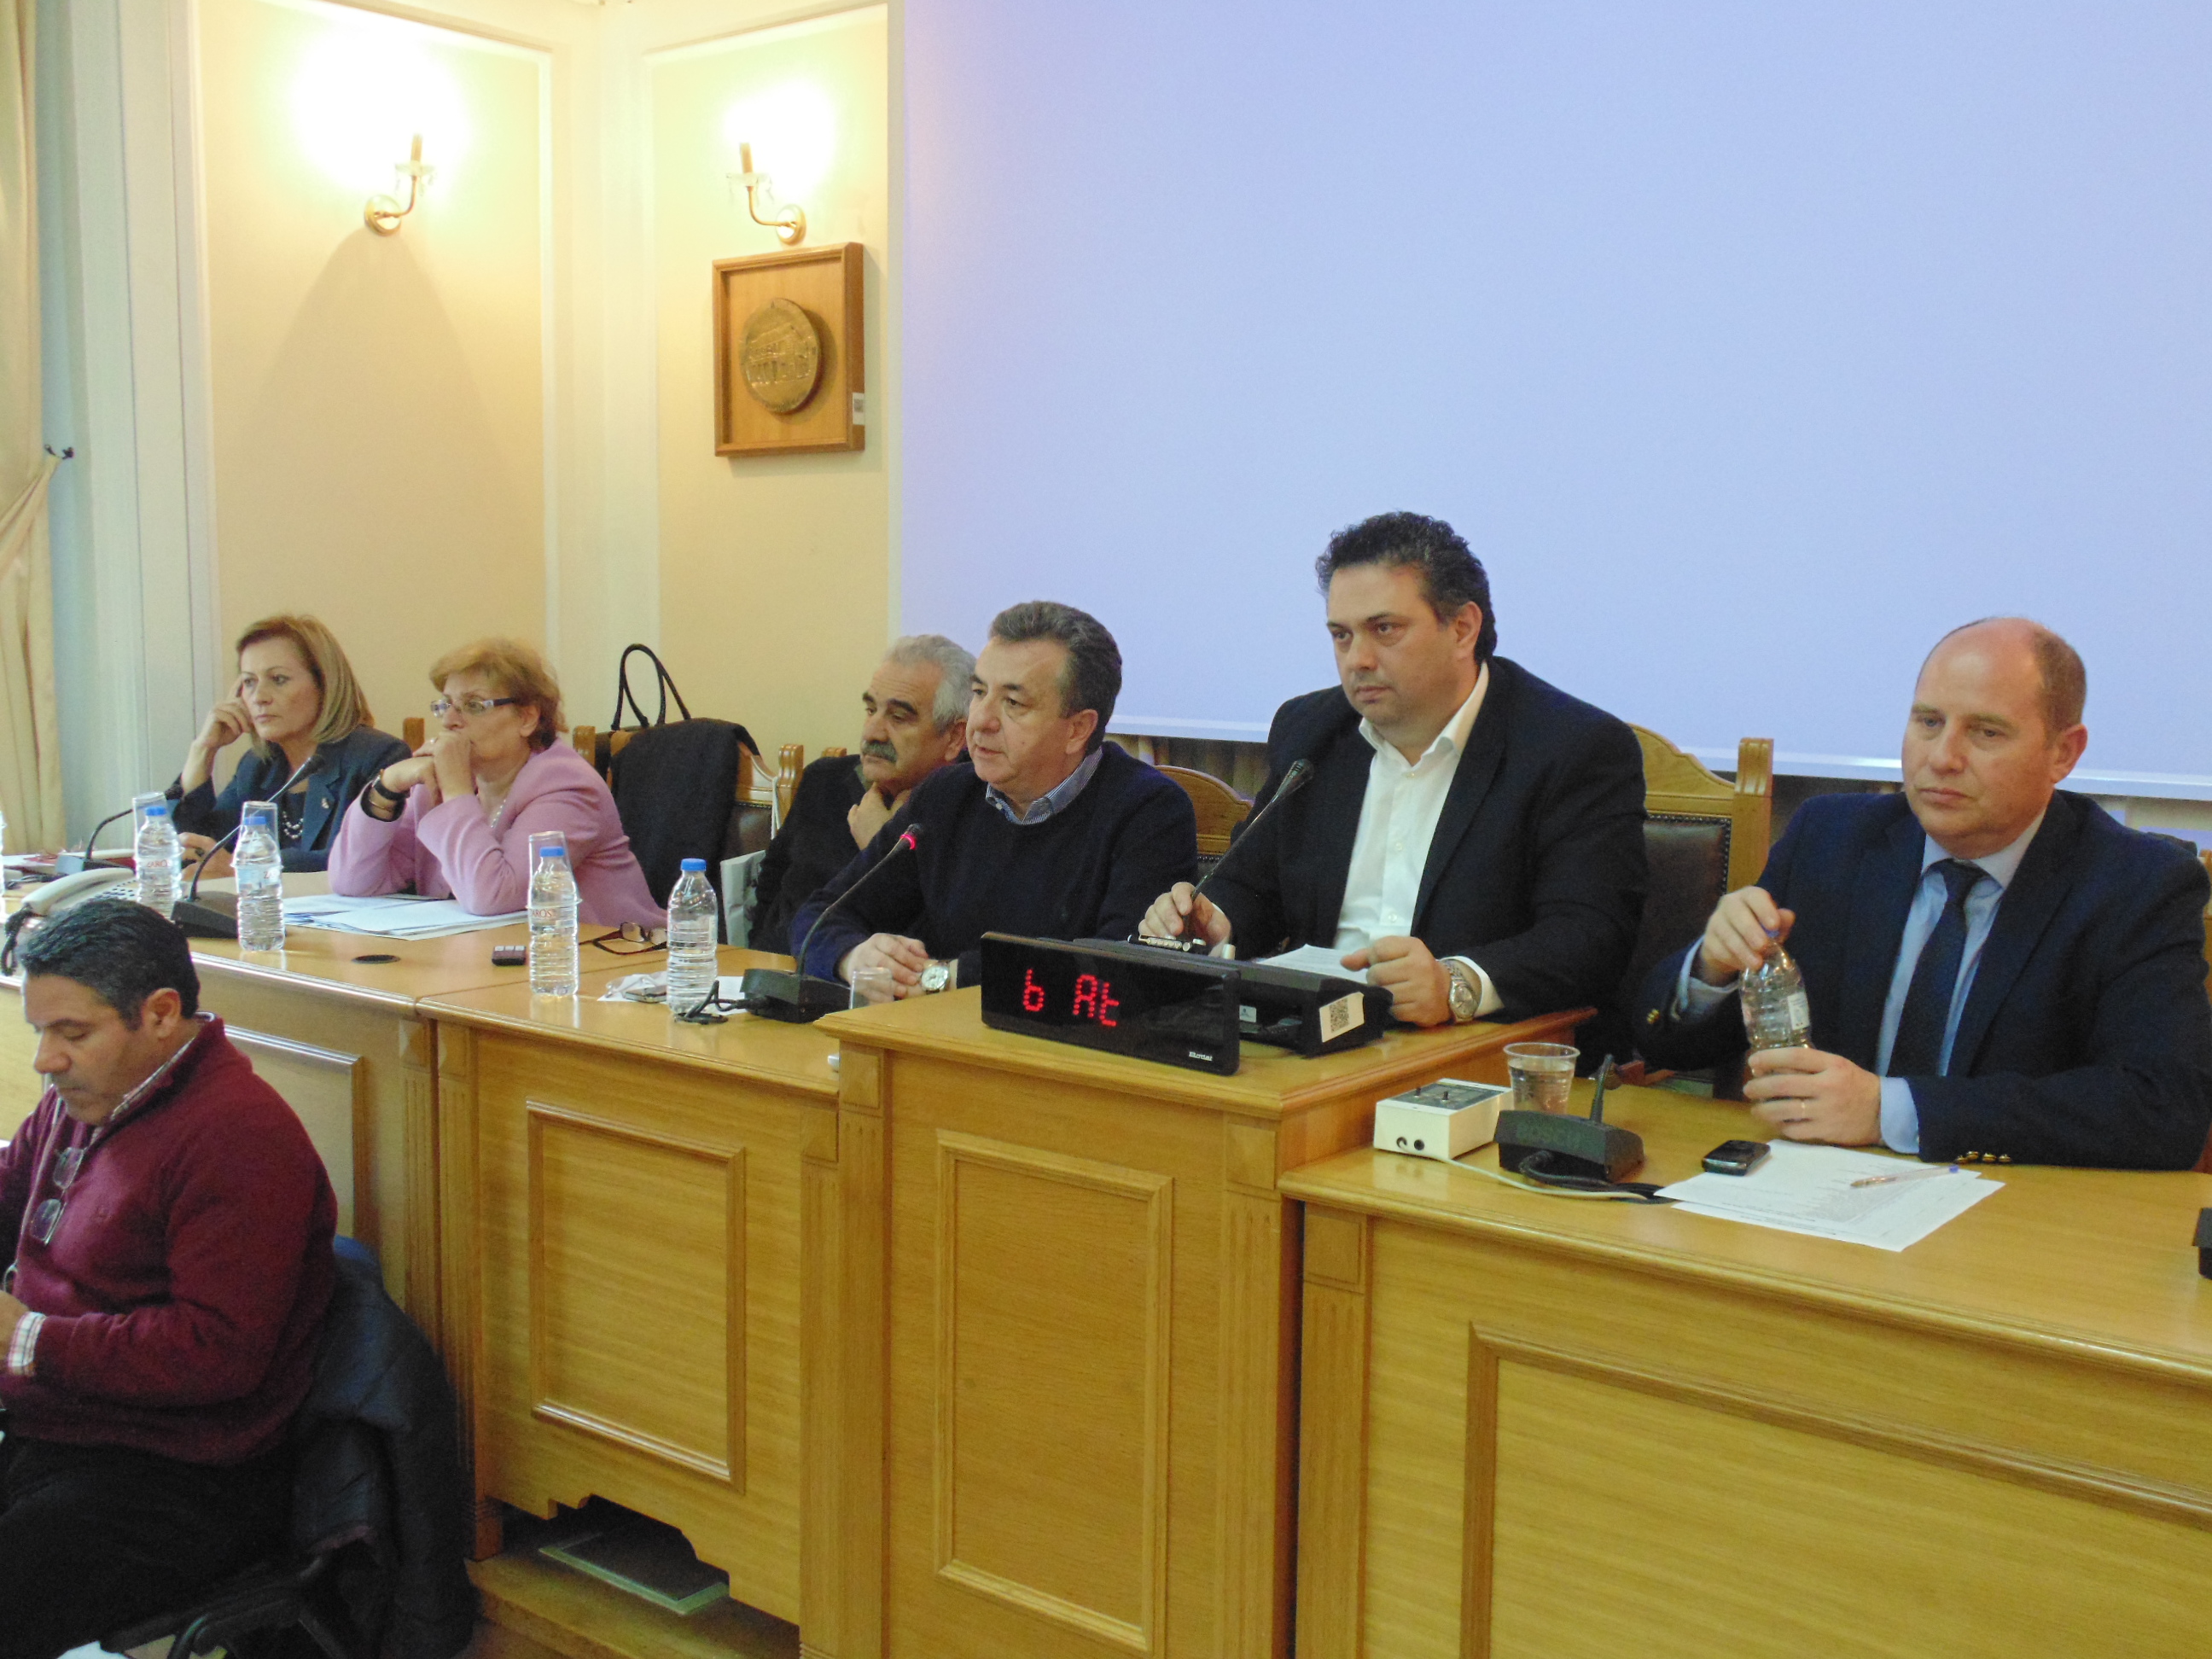 Πρόταση Ανηψητάκη για την αναβάθμιση του Περιφερειακού Συμβουλίου Κρήτης